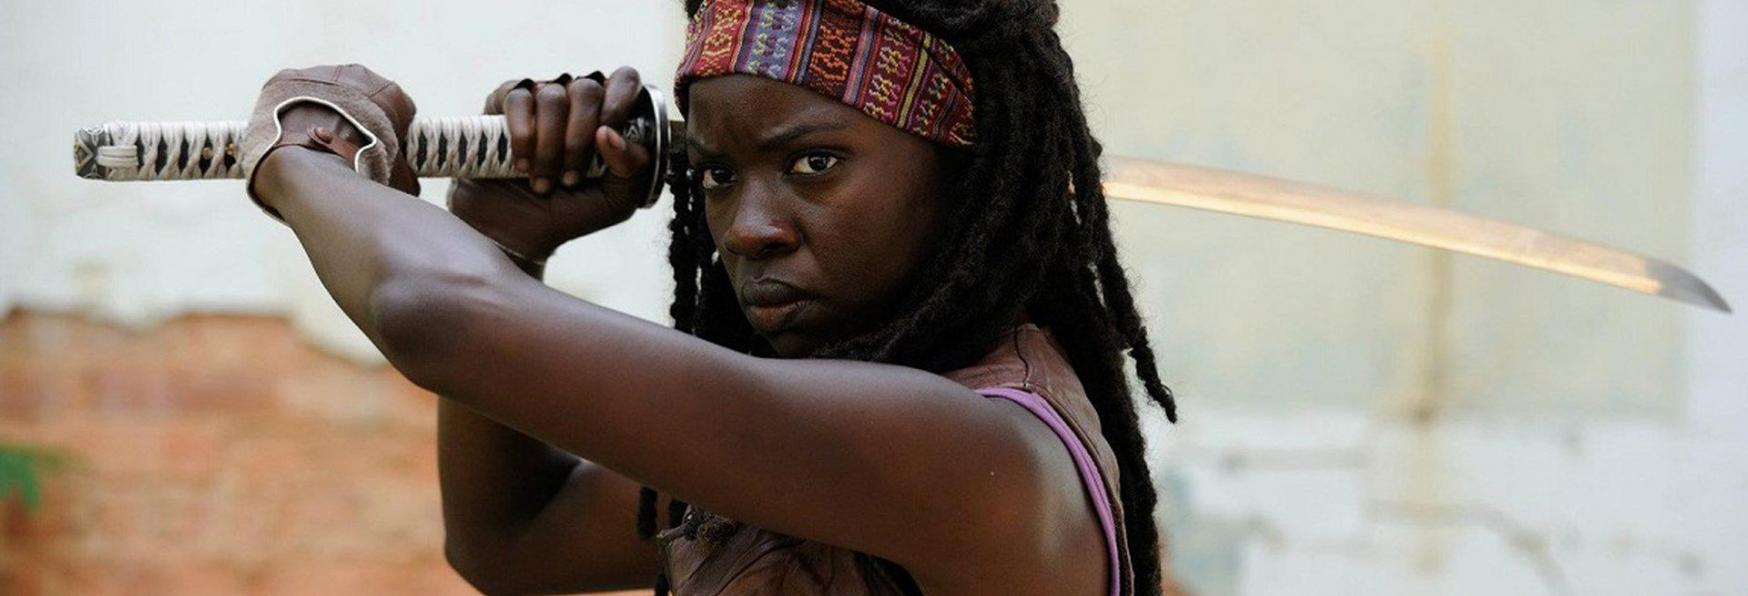 The Walking Dead 10: Danai Gurira commenta la sua imminente Uscita di Scena